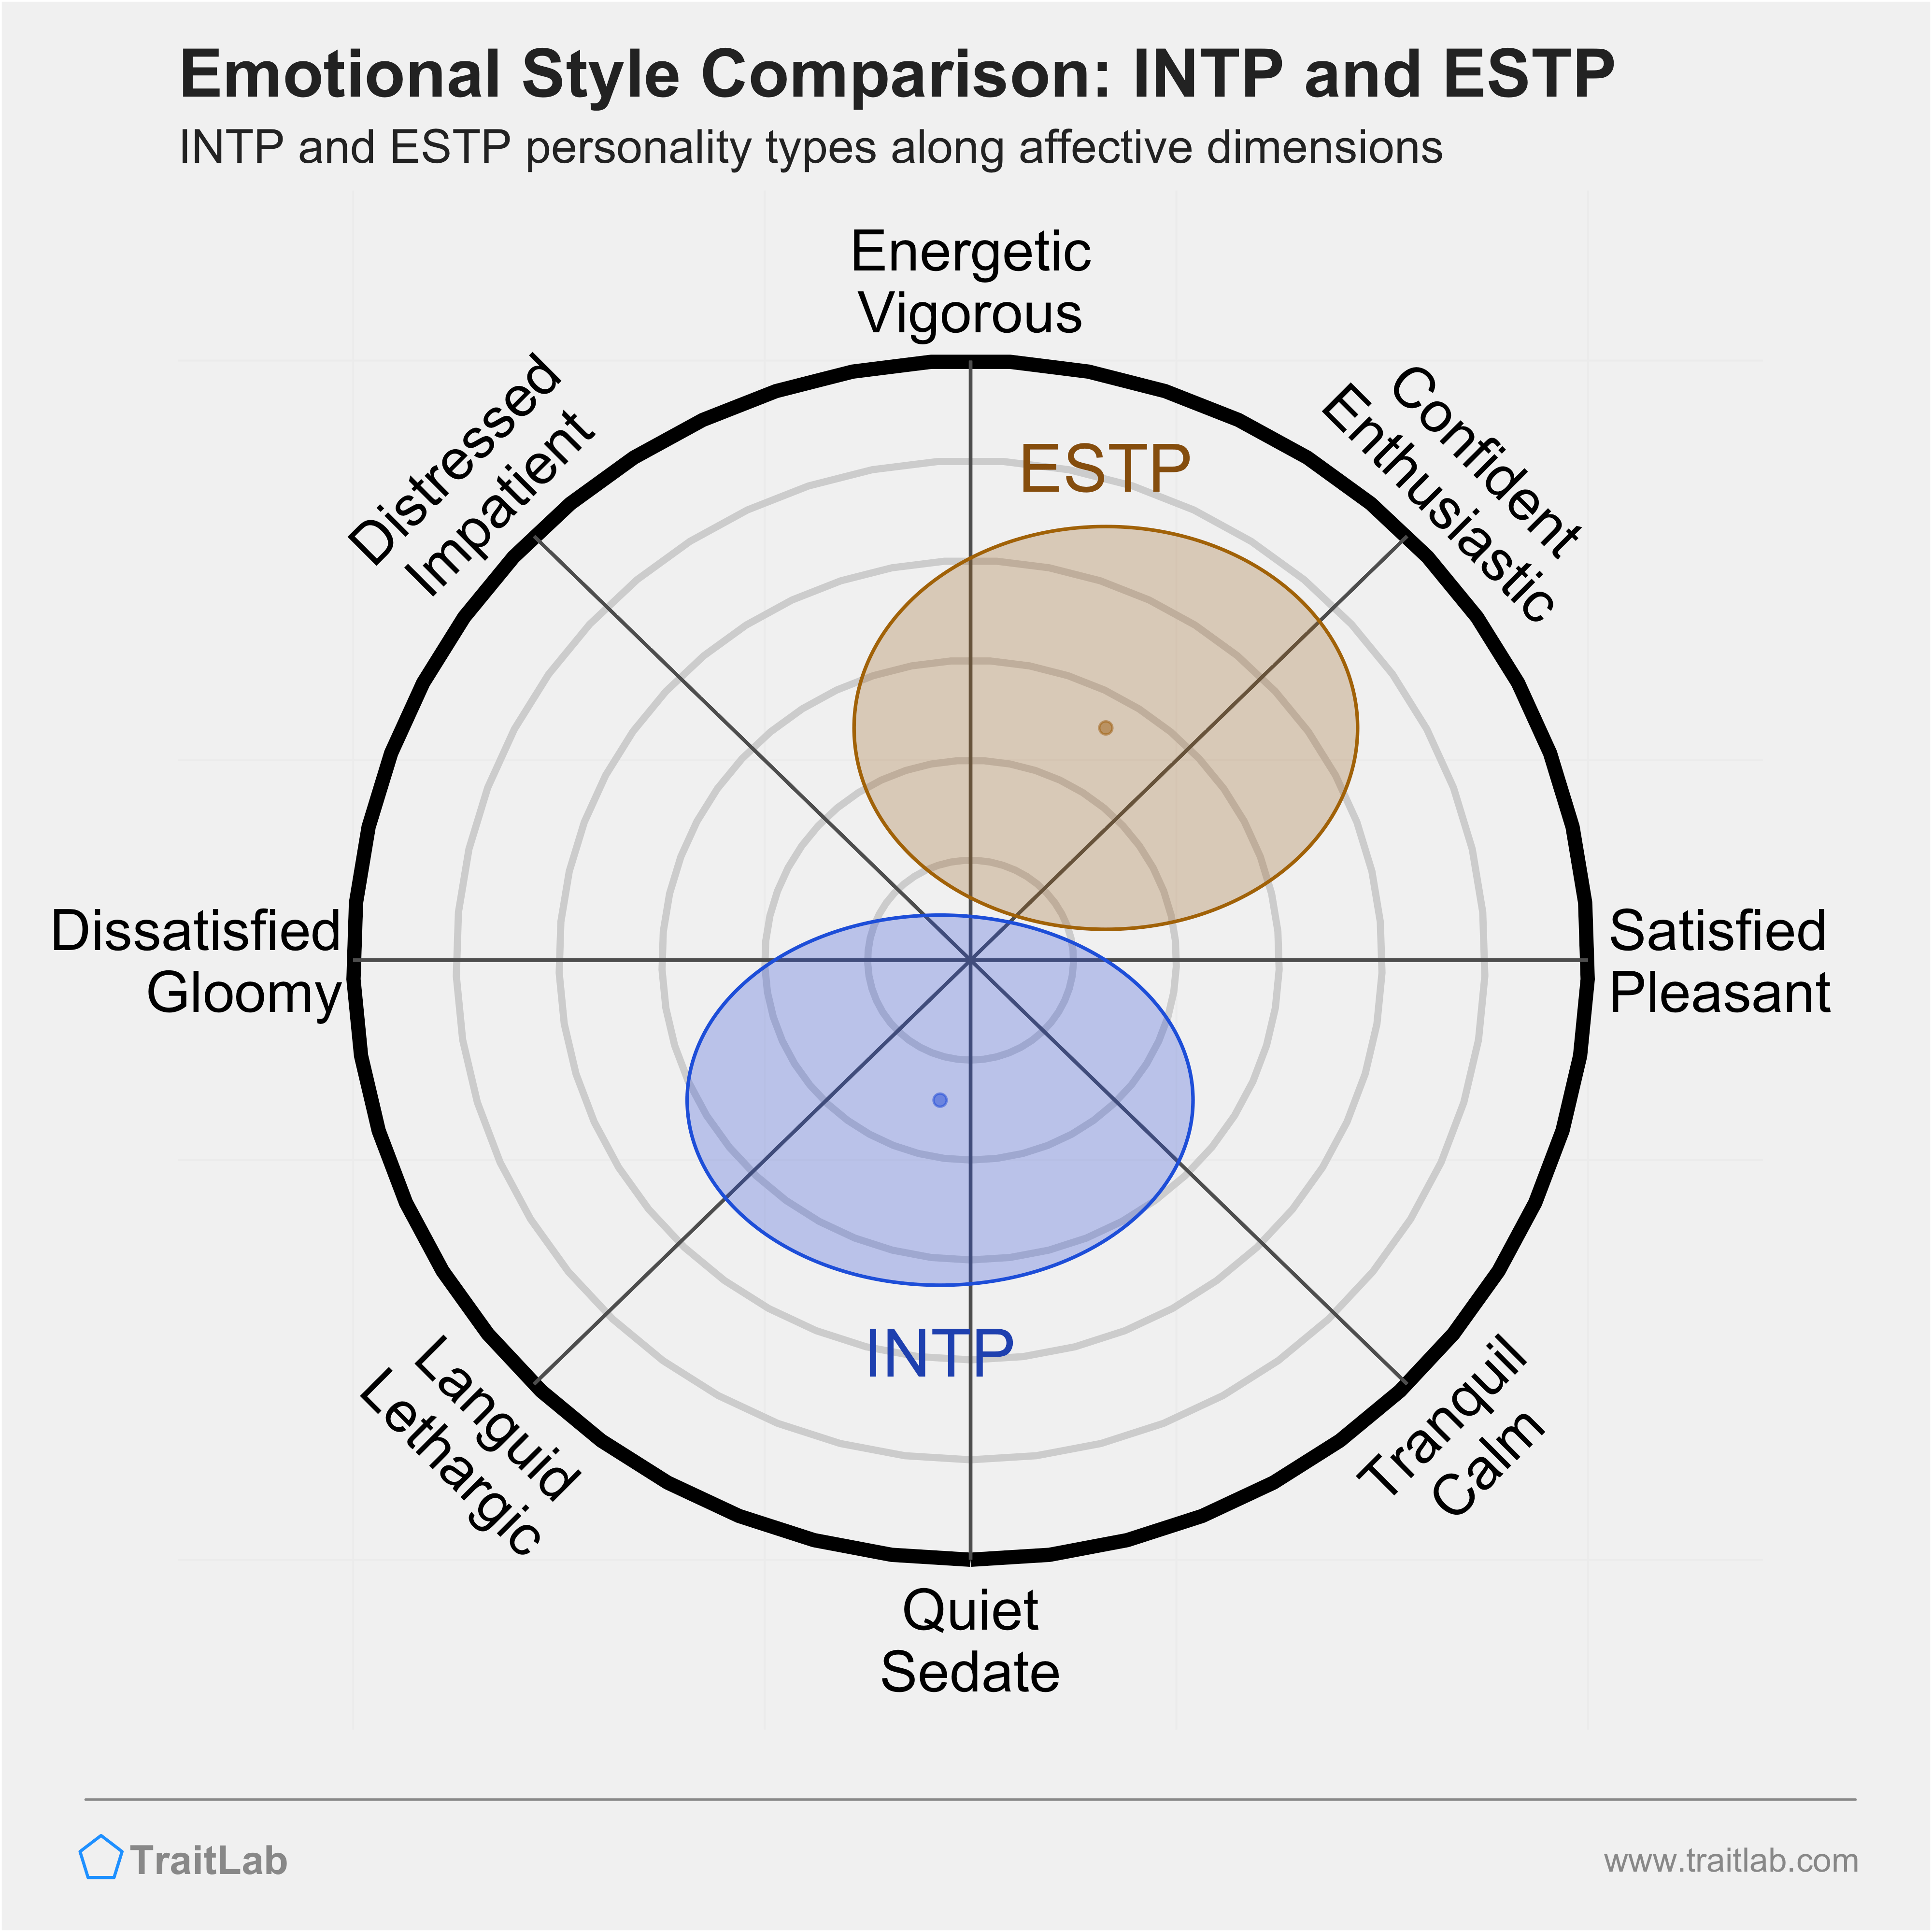 INTP and ESTP comparison across emotional (affective) dimensions